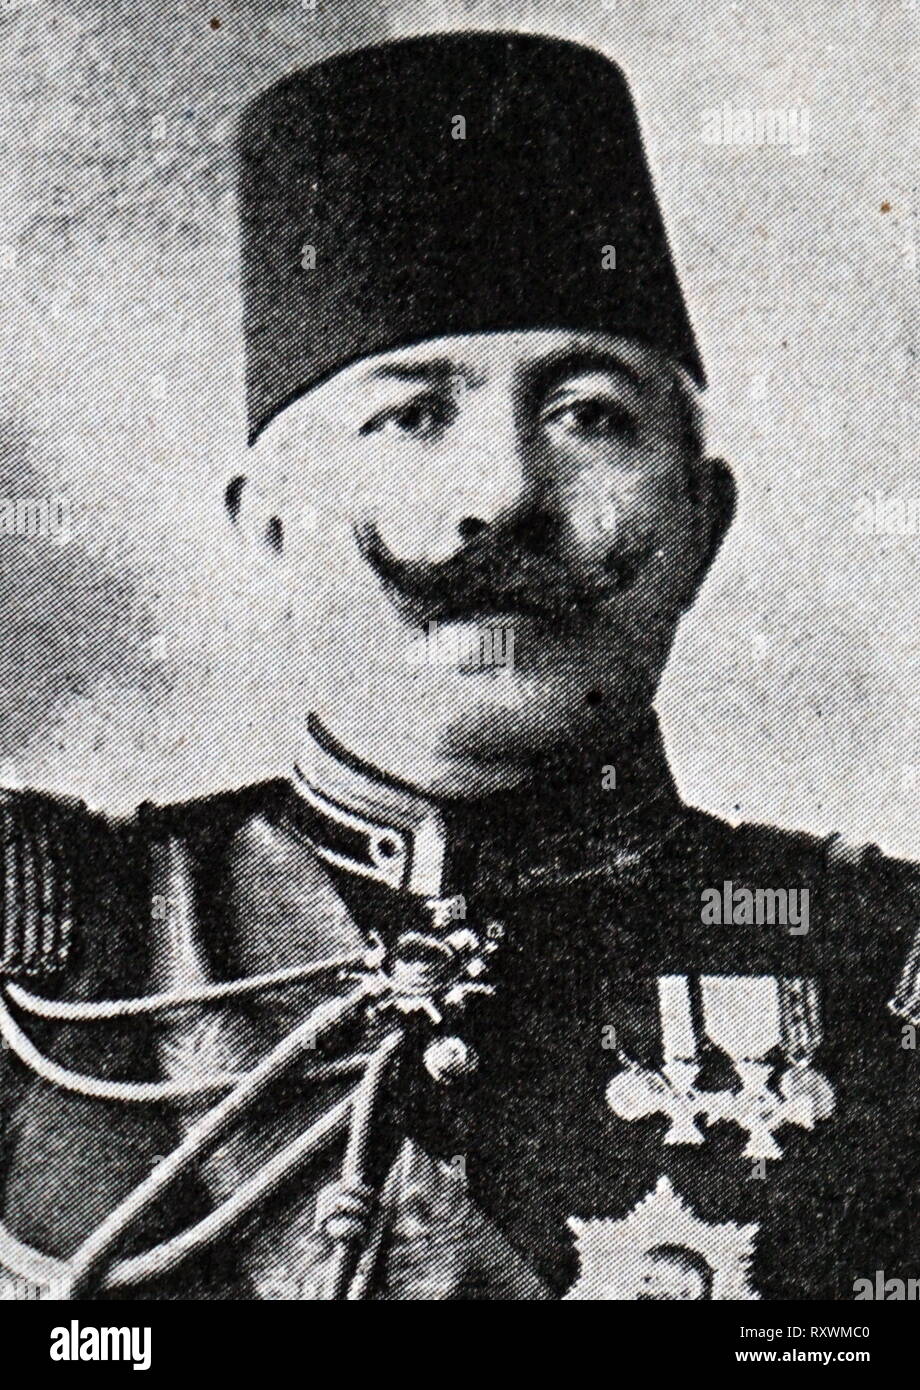 Ahmed Izzet Pascià (1864 - 31 Marzo 1937), noto come Ahmet Furgac Izzet dopo il cognome turco legge del 1934, è stato un generale Ottomano durante la guerra mondiale I. era anche uno degli ultimi Grand Viziers dell'Impero Ottomano (14 Ottobre 1918 - 8 novembre 1918) e il suo ultimo il Ministro degli Affari Esteri Foto Stock